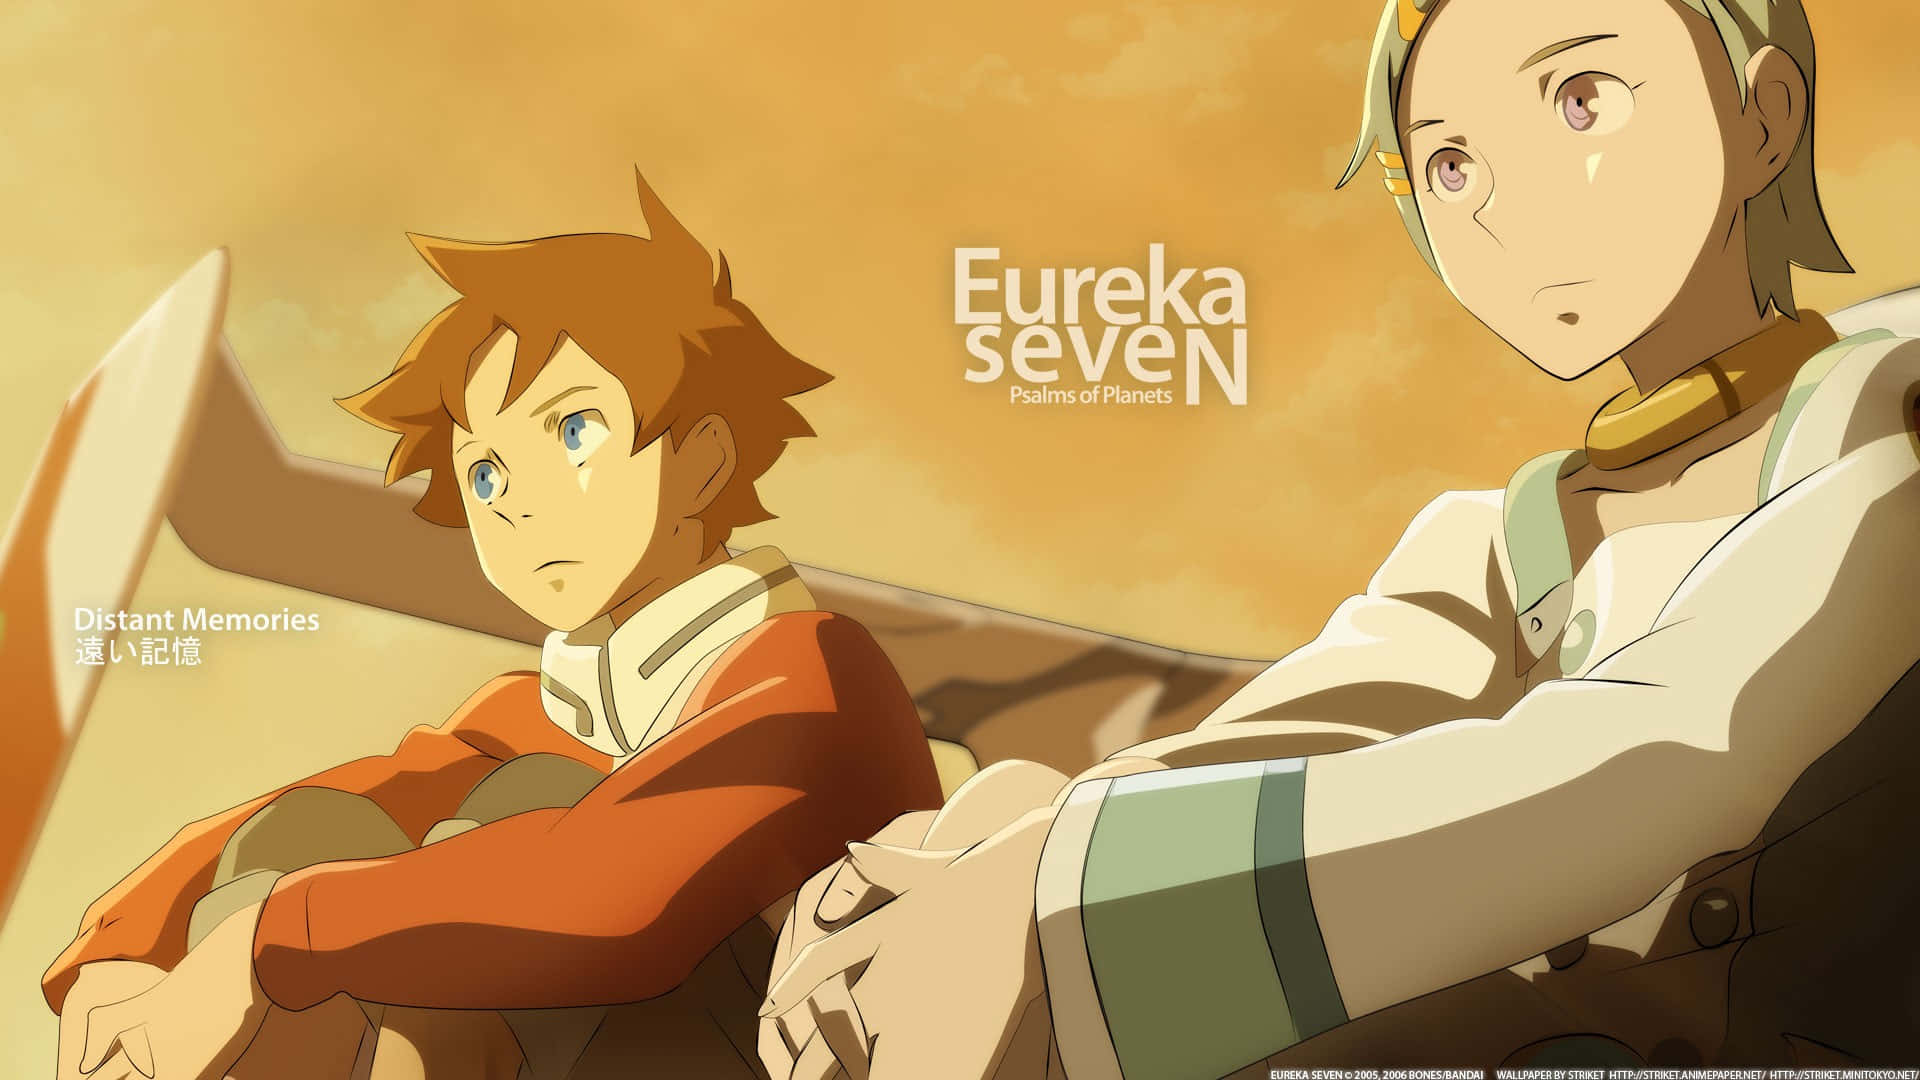 Dethär Är Eureka Och Renton Från Den Populära Anime-serien Eureka Seven!